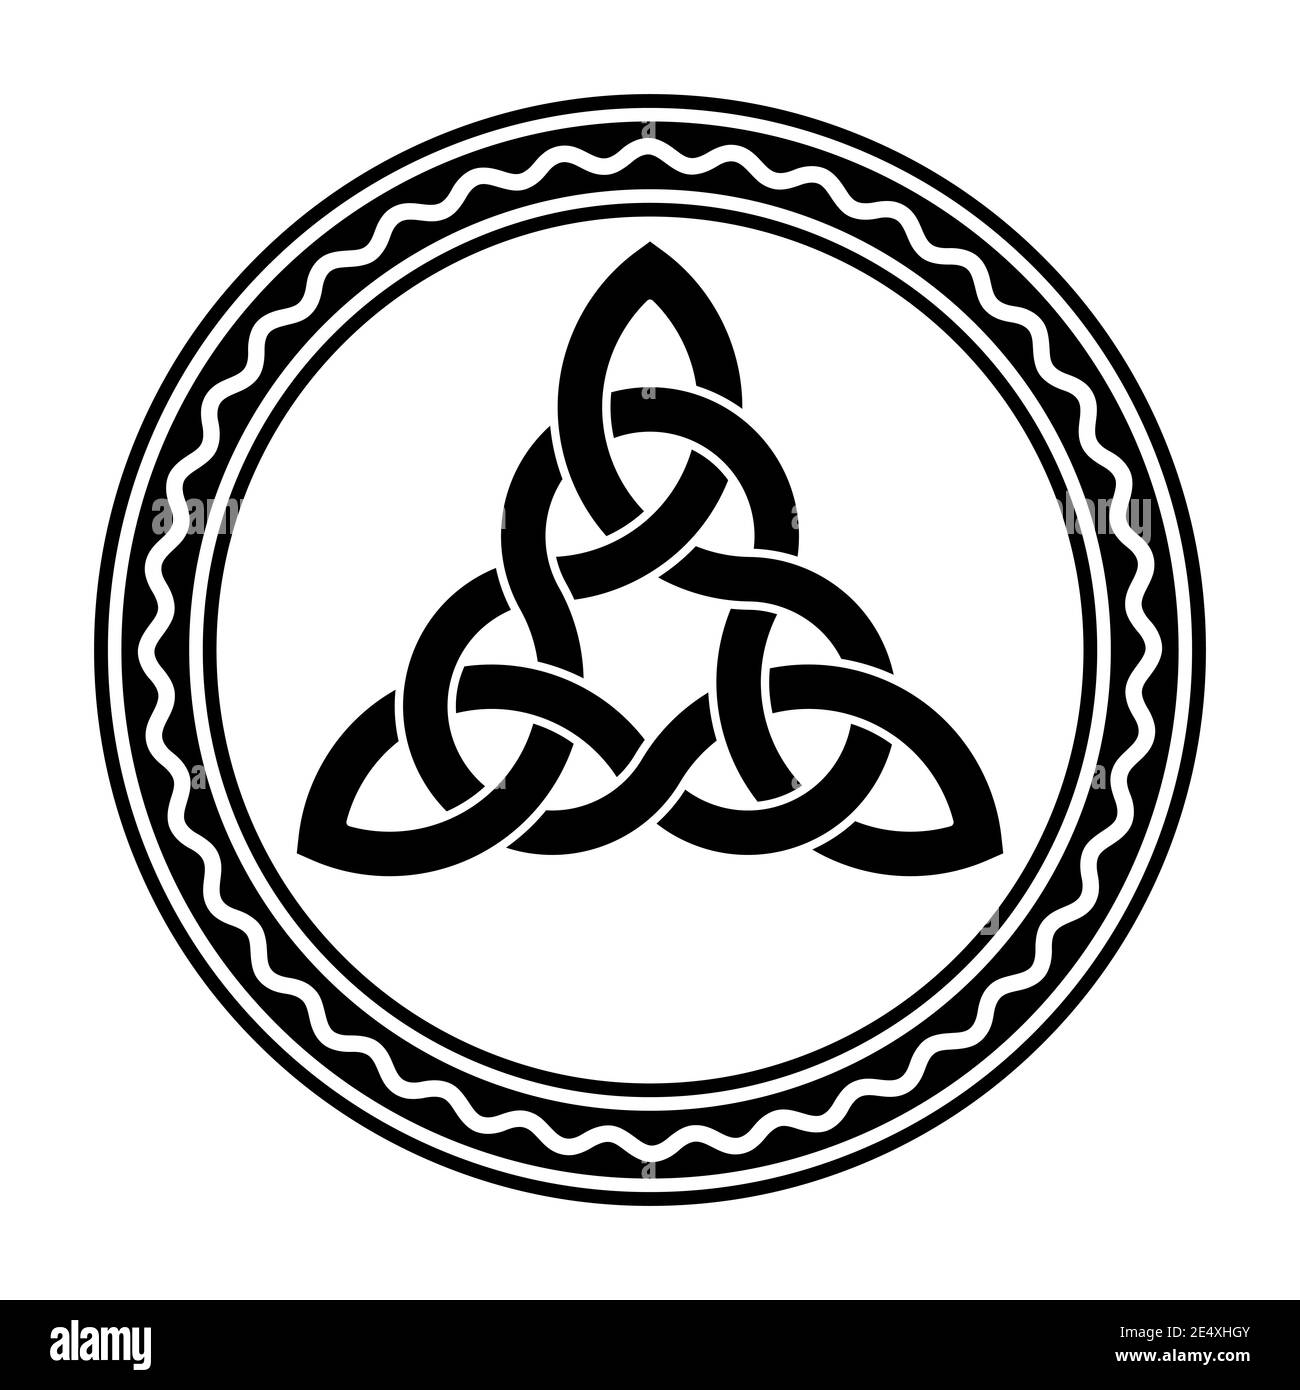 Triquetra intrecciata, un nodo celtico, in una cornice circolare con linea bianca ondulata. Figura triangolare utilizzata negli antichi ornamenti cristiani. Foto Stock